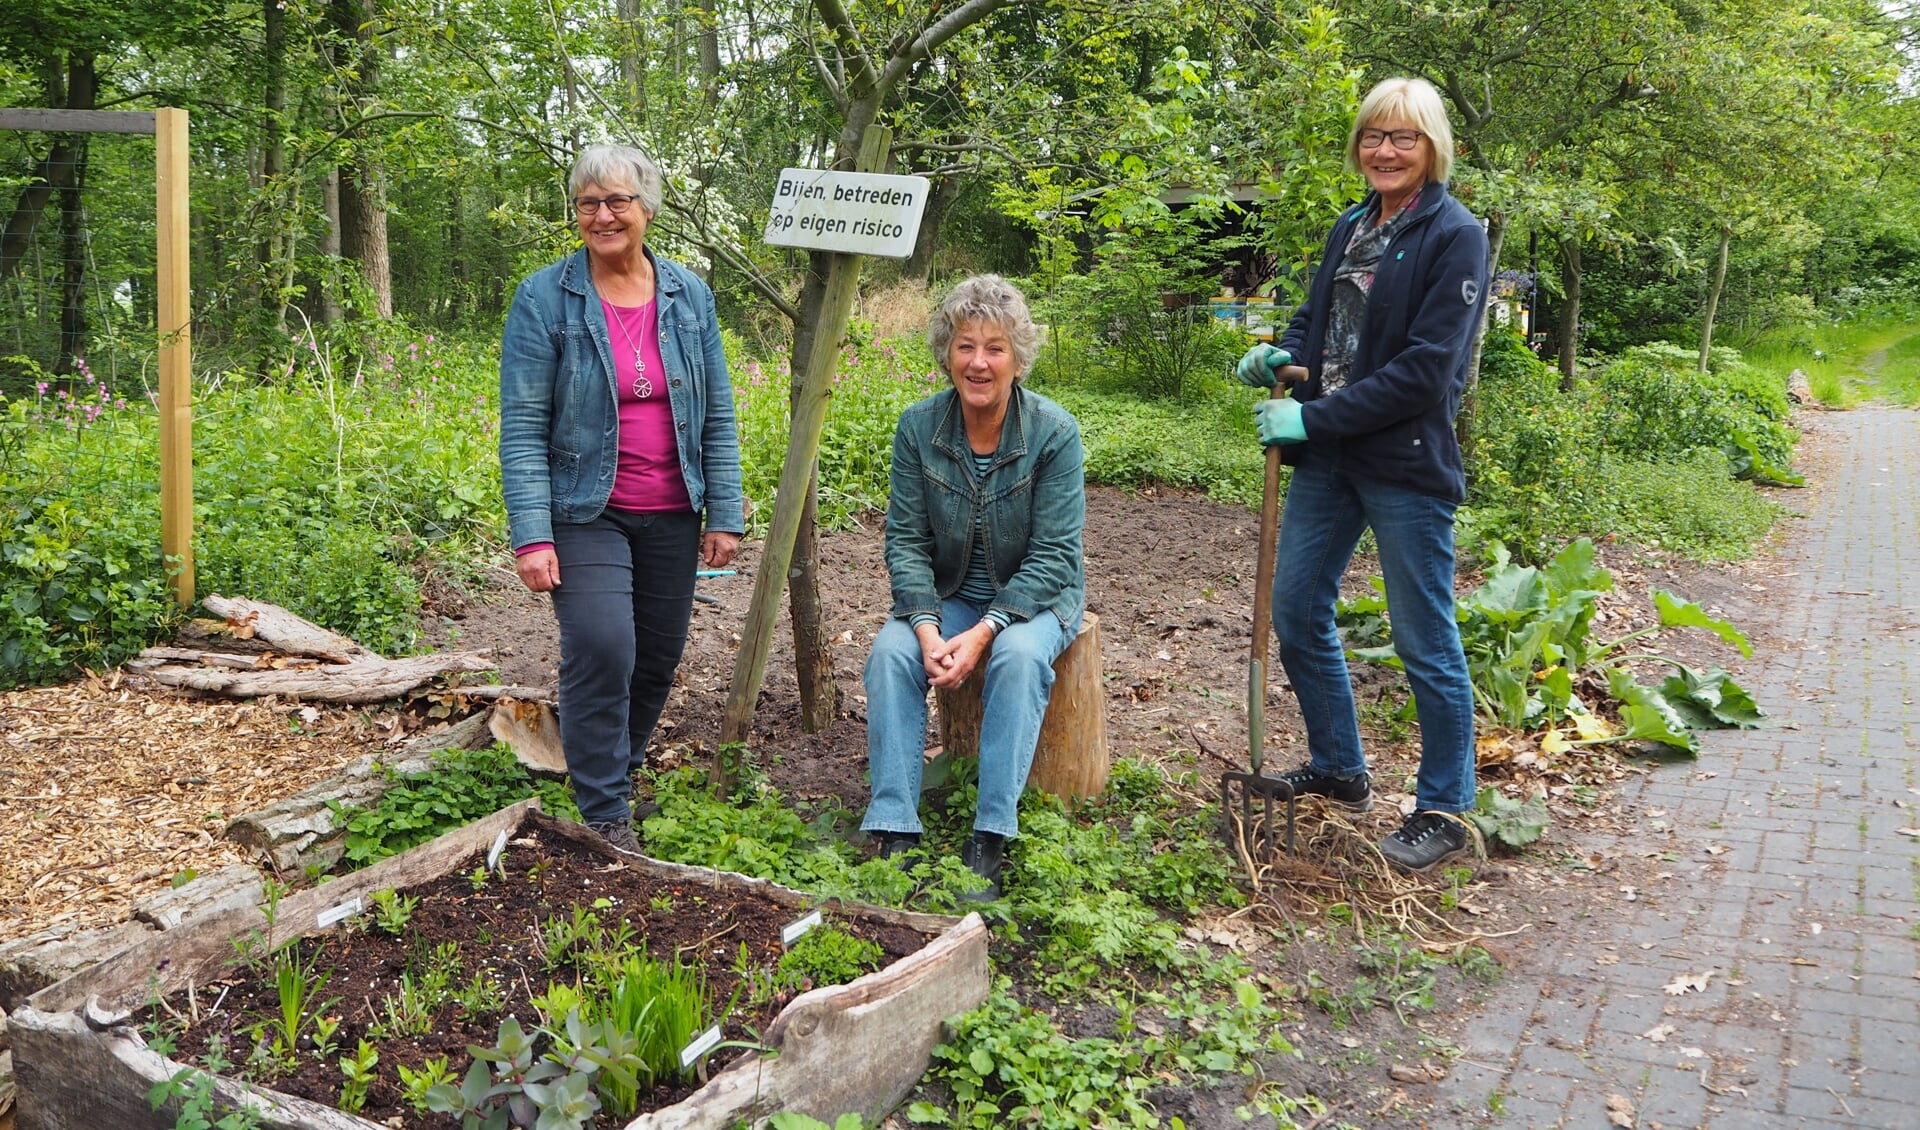 De tuin is grondig vernieuwd, mede dankzij vrijwilligers. Links coördinator Janny Jochemsen.